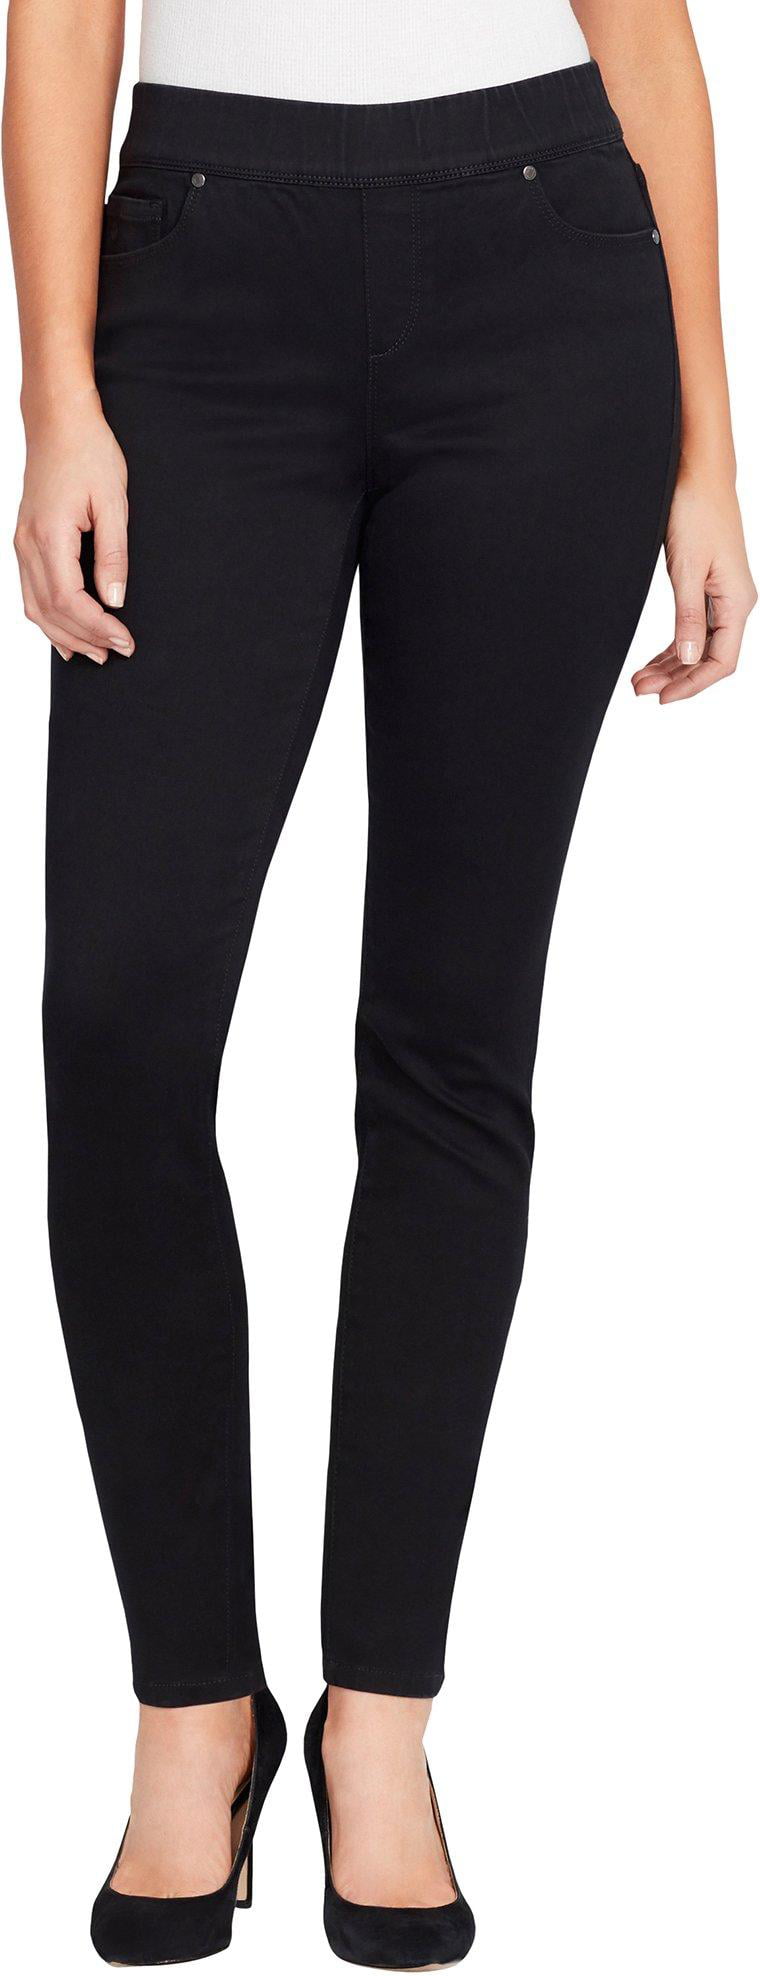 Gloria Vanderbilt - Gloria Vanderbilt Womens Avery Pull On Pants ...